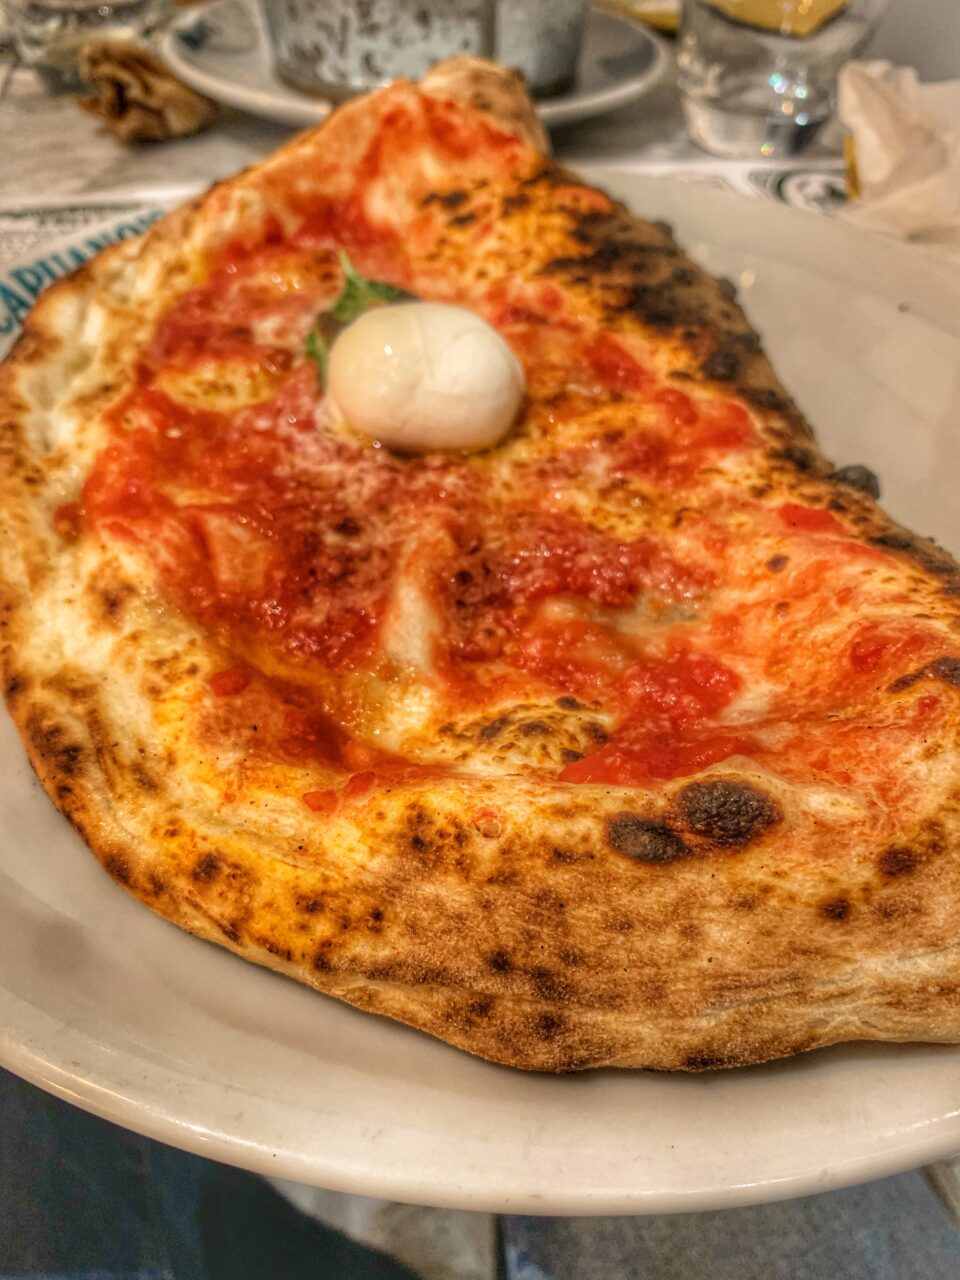 Recensione Pizzeria Capuano's